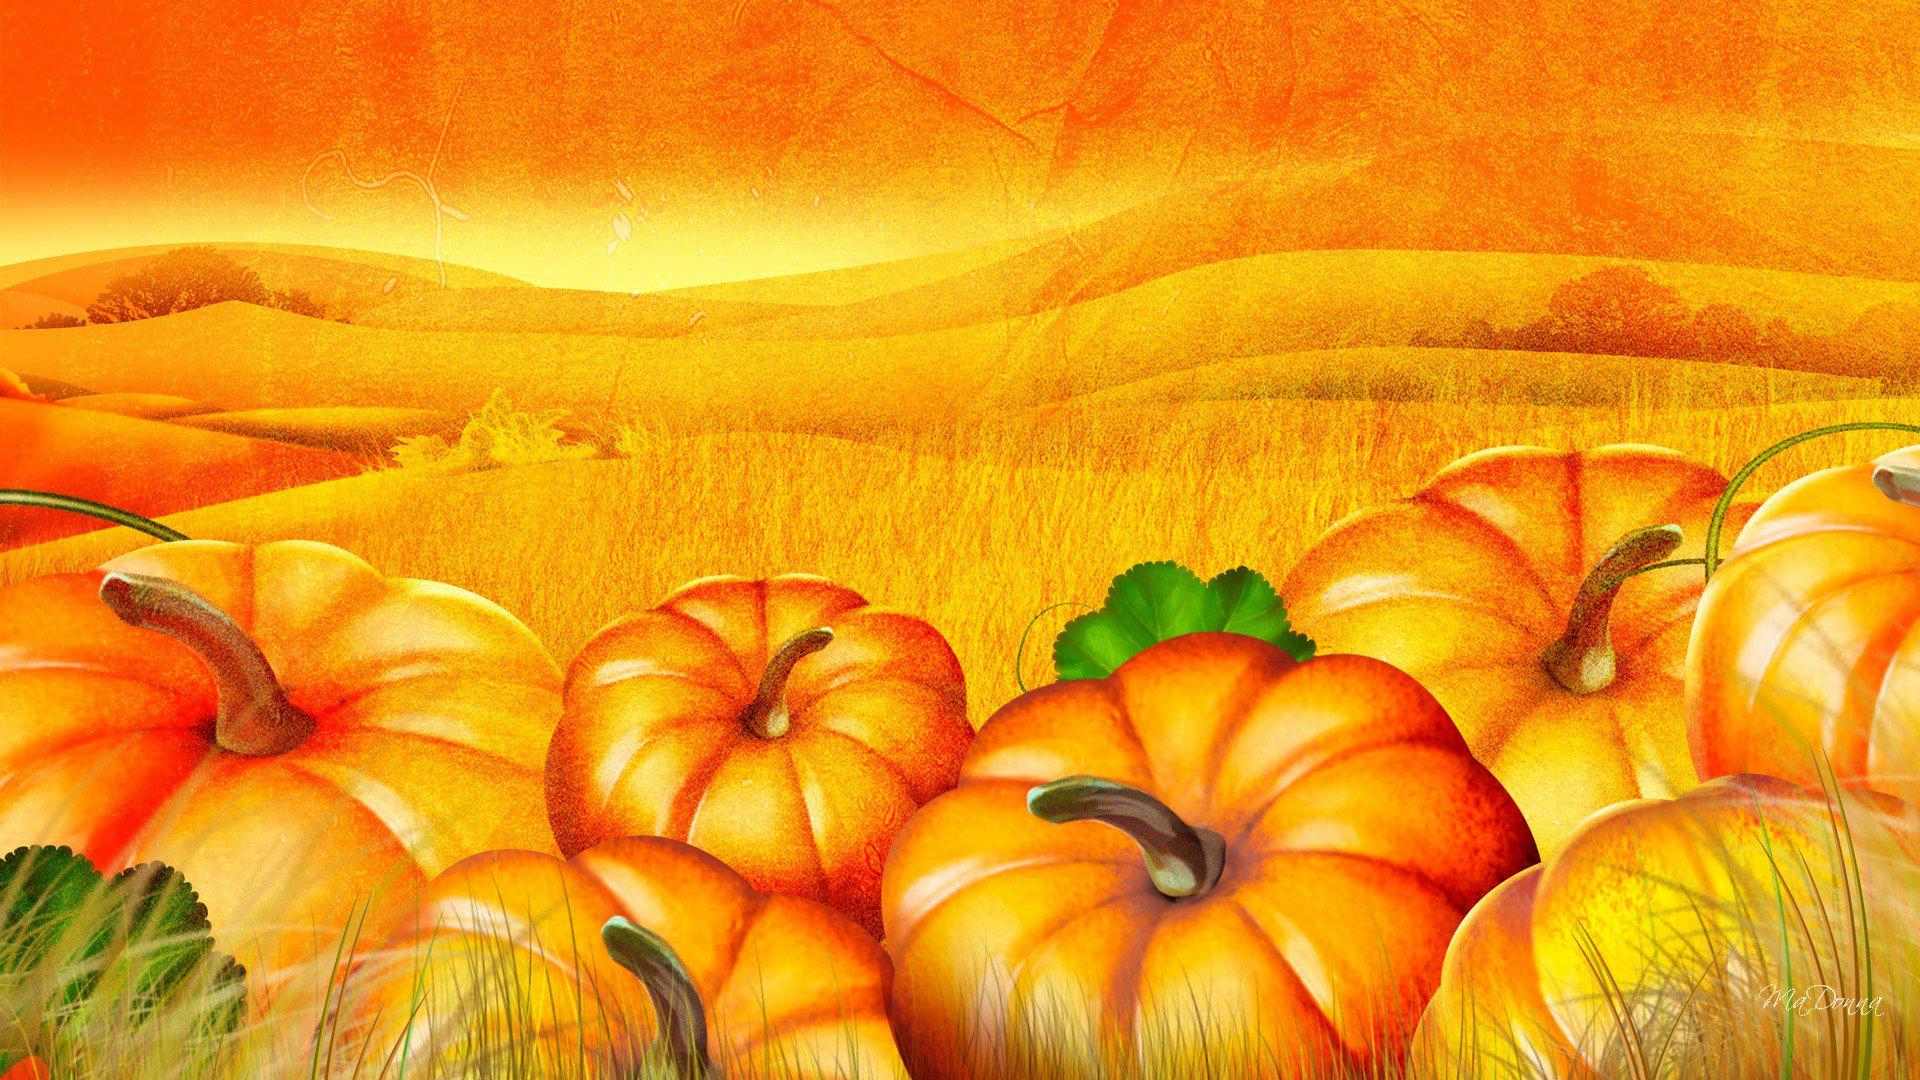 1920x1080 HD Pumpkin Patch Halloween Autumn Desktop Photo Wallpaper | Download Free 145438